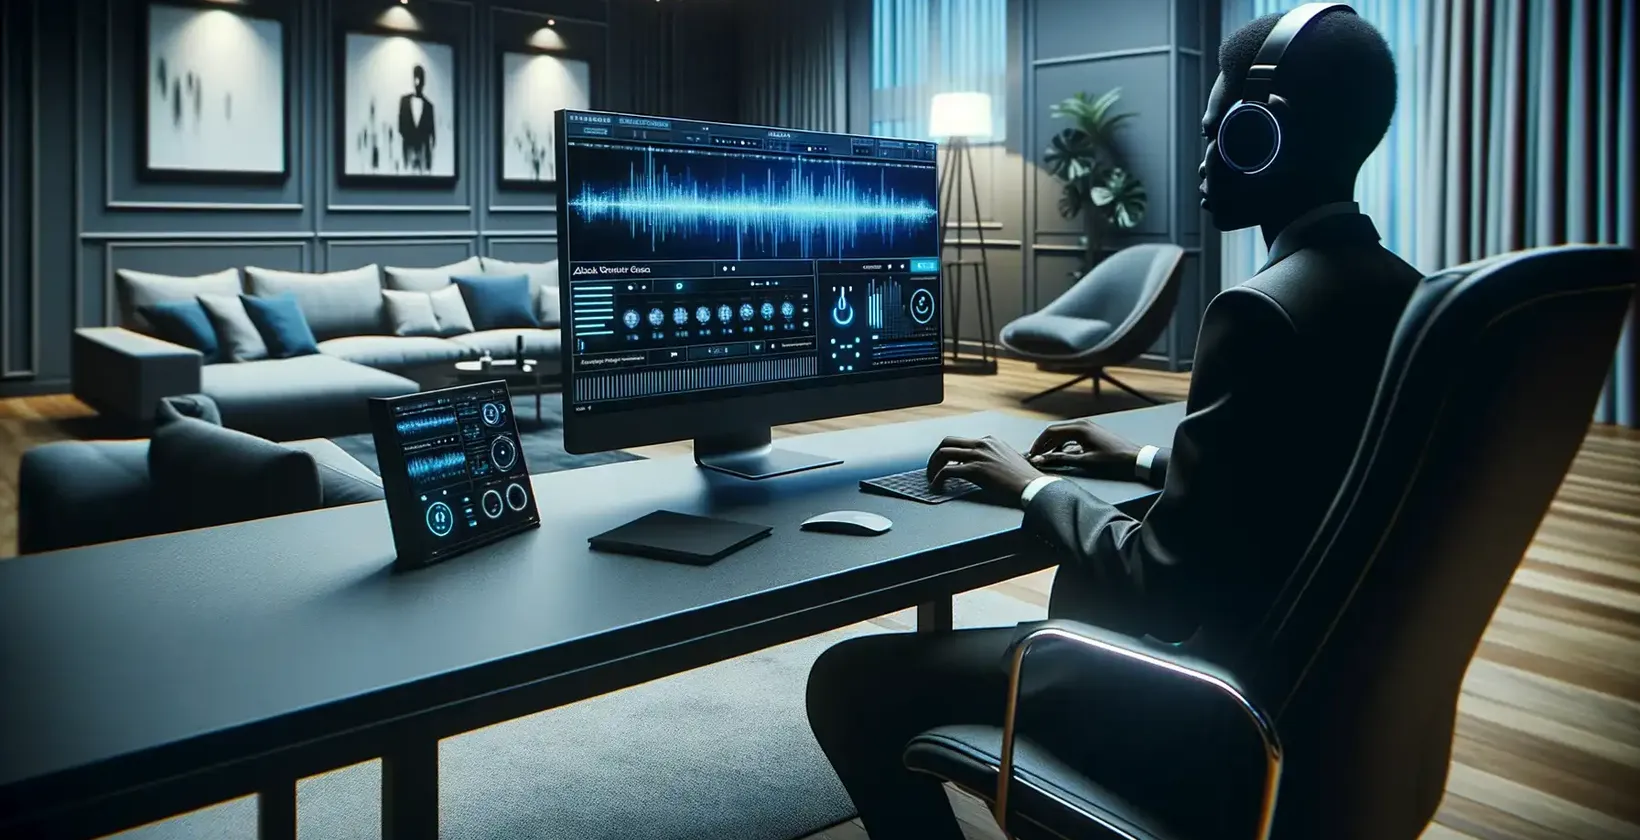 Et sofistikeret rum med en person iført hovedtelefoner, der arbejder intenst på en computer, som viser en indviklet lyd.